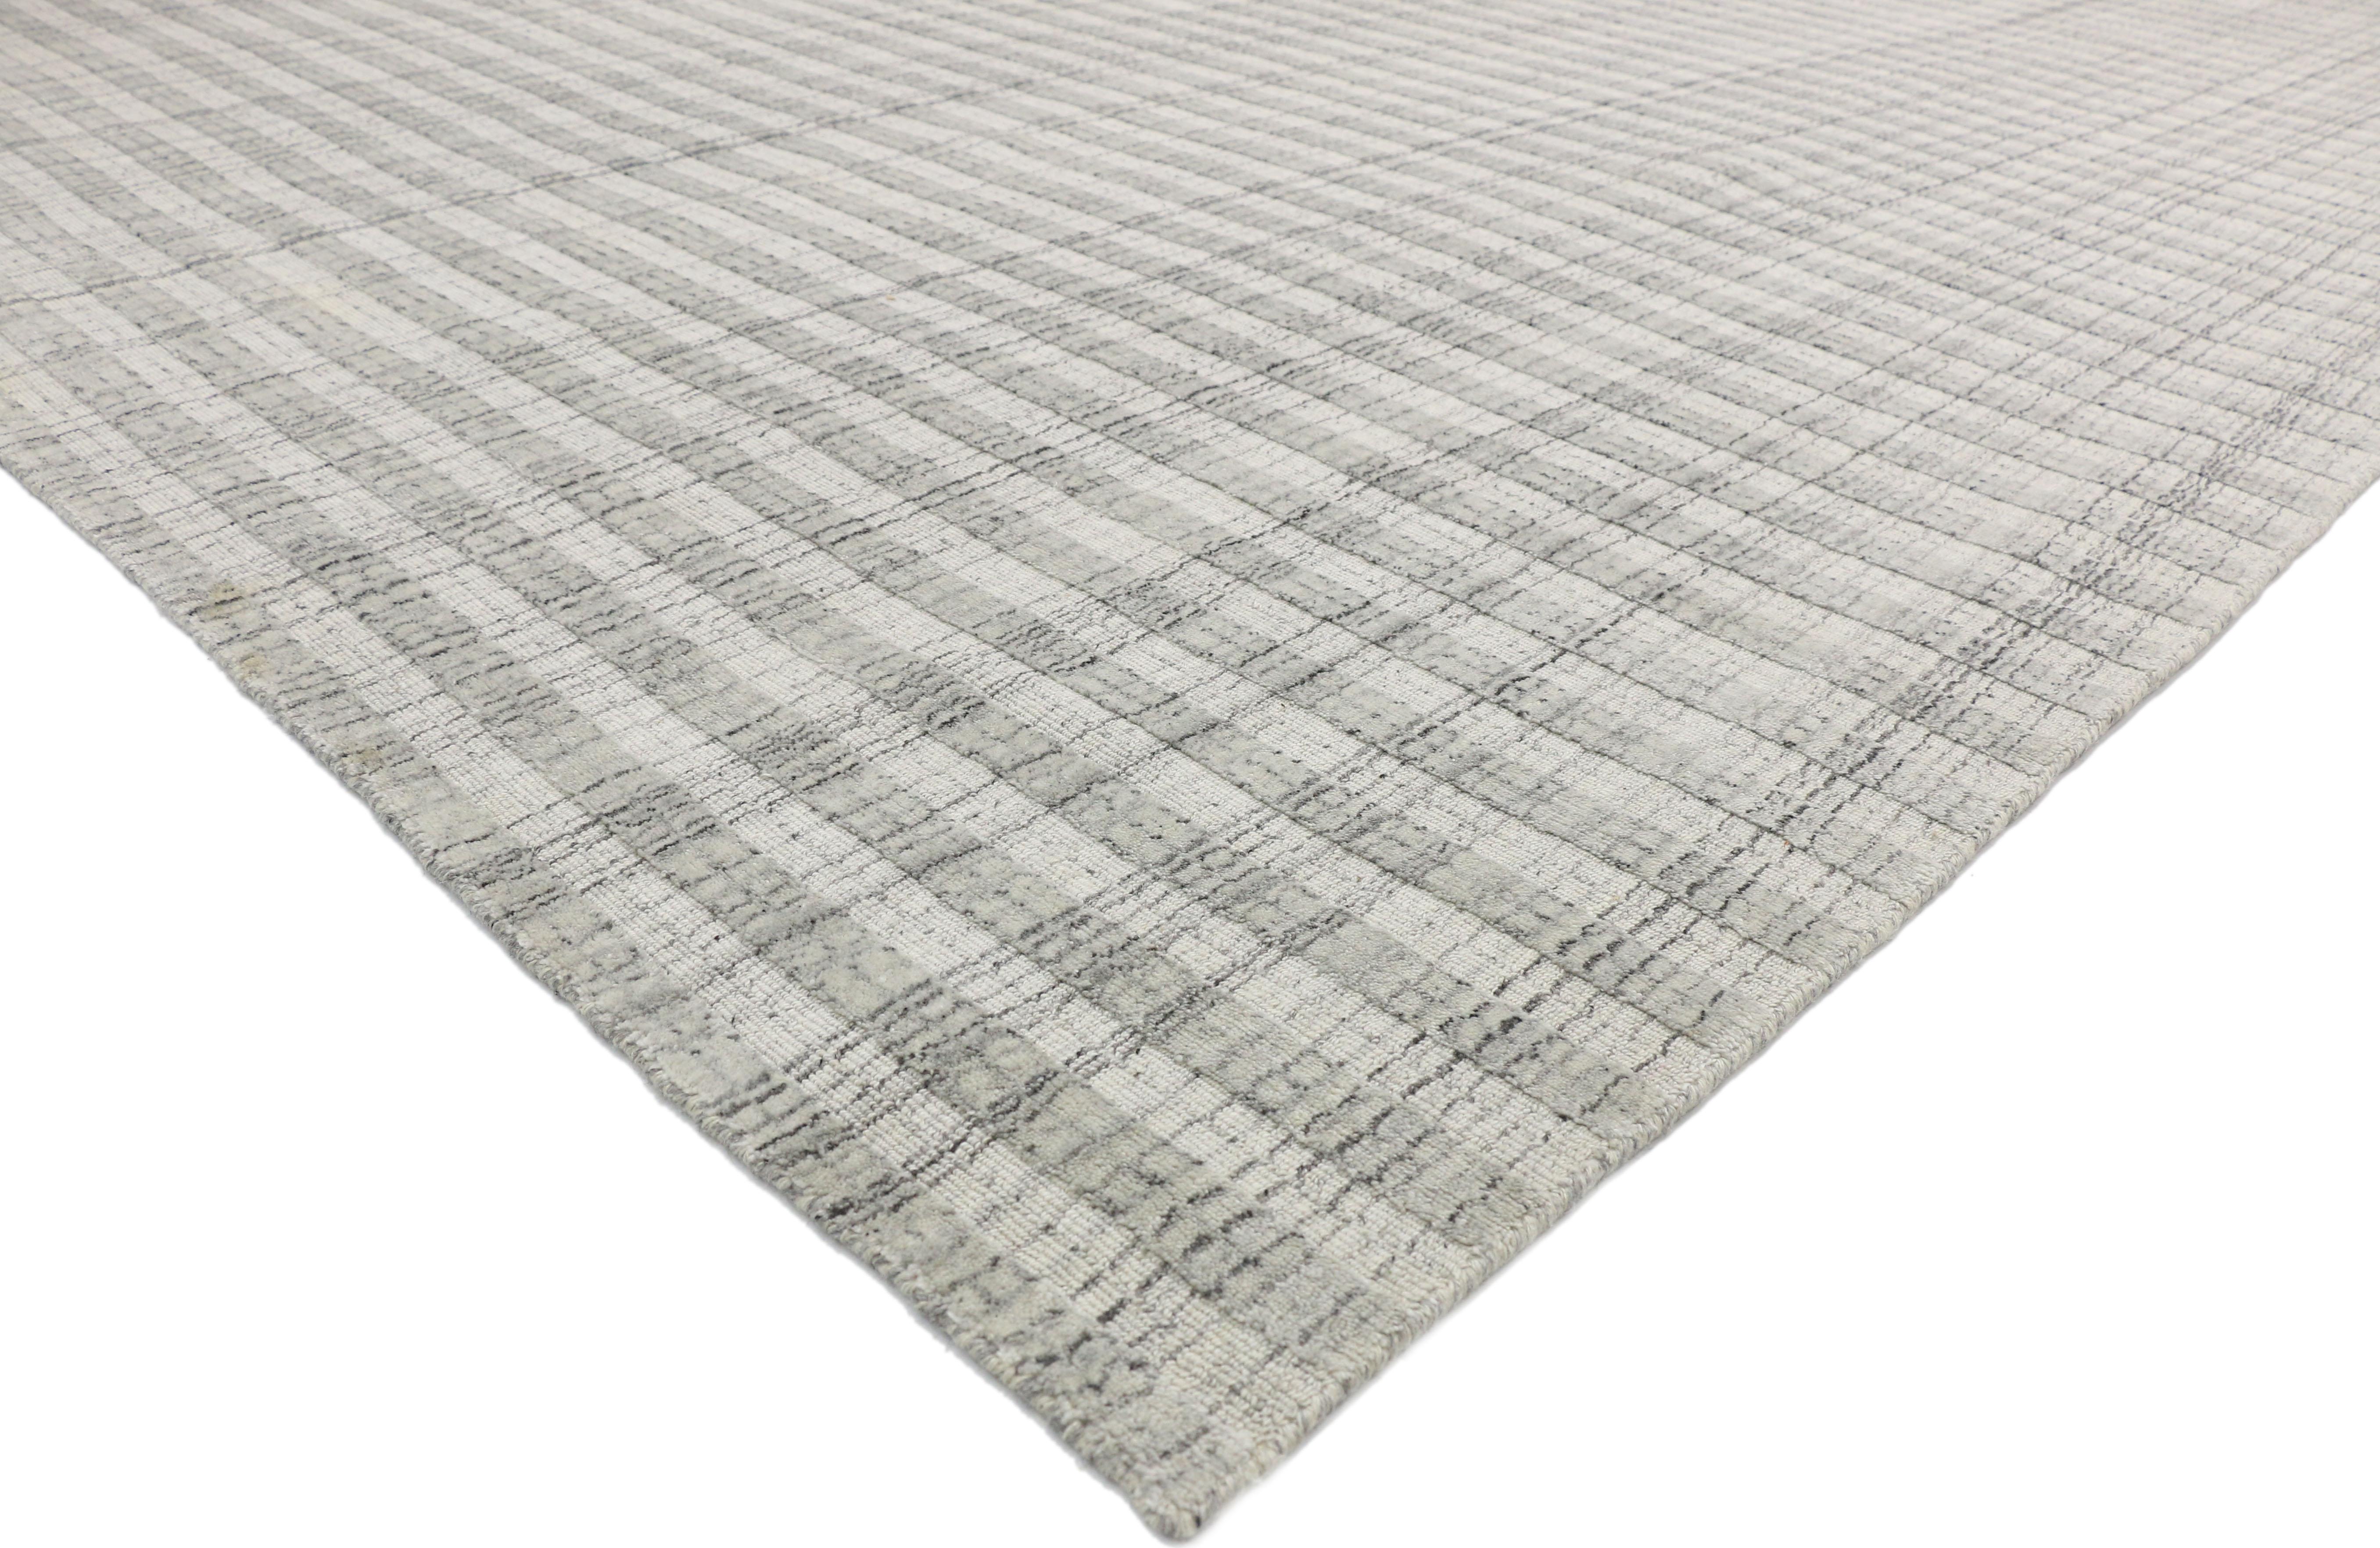 30432, grauer Übergangsteppich im schwedisch-gustavianischen Stil, Textur-Teppich. Elegante Schlichtheit trifft auf provenzalischen Chic in diesem wunderschönen grauen Teppich mit schwedisch-gustavianischem Stil. Dieser ruhige und komfortable